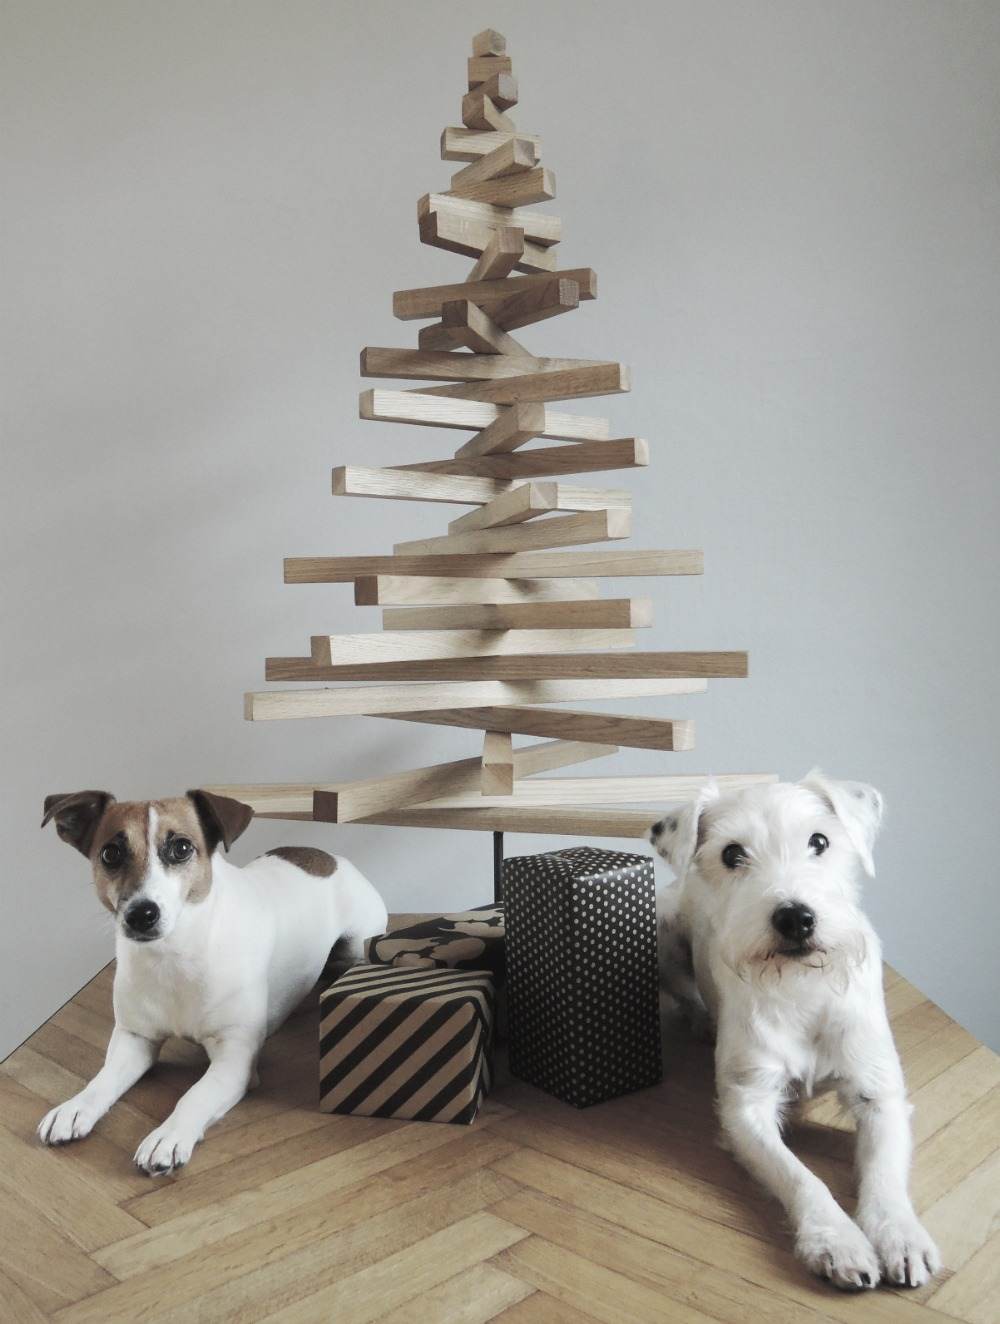 يجلس كلبان صغيران بجوار شجرة التنوب المصنوعة من الخشب الطبيعي بأسلوب بسيط